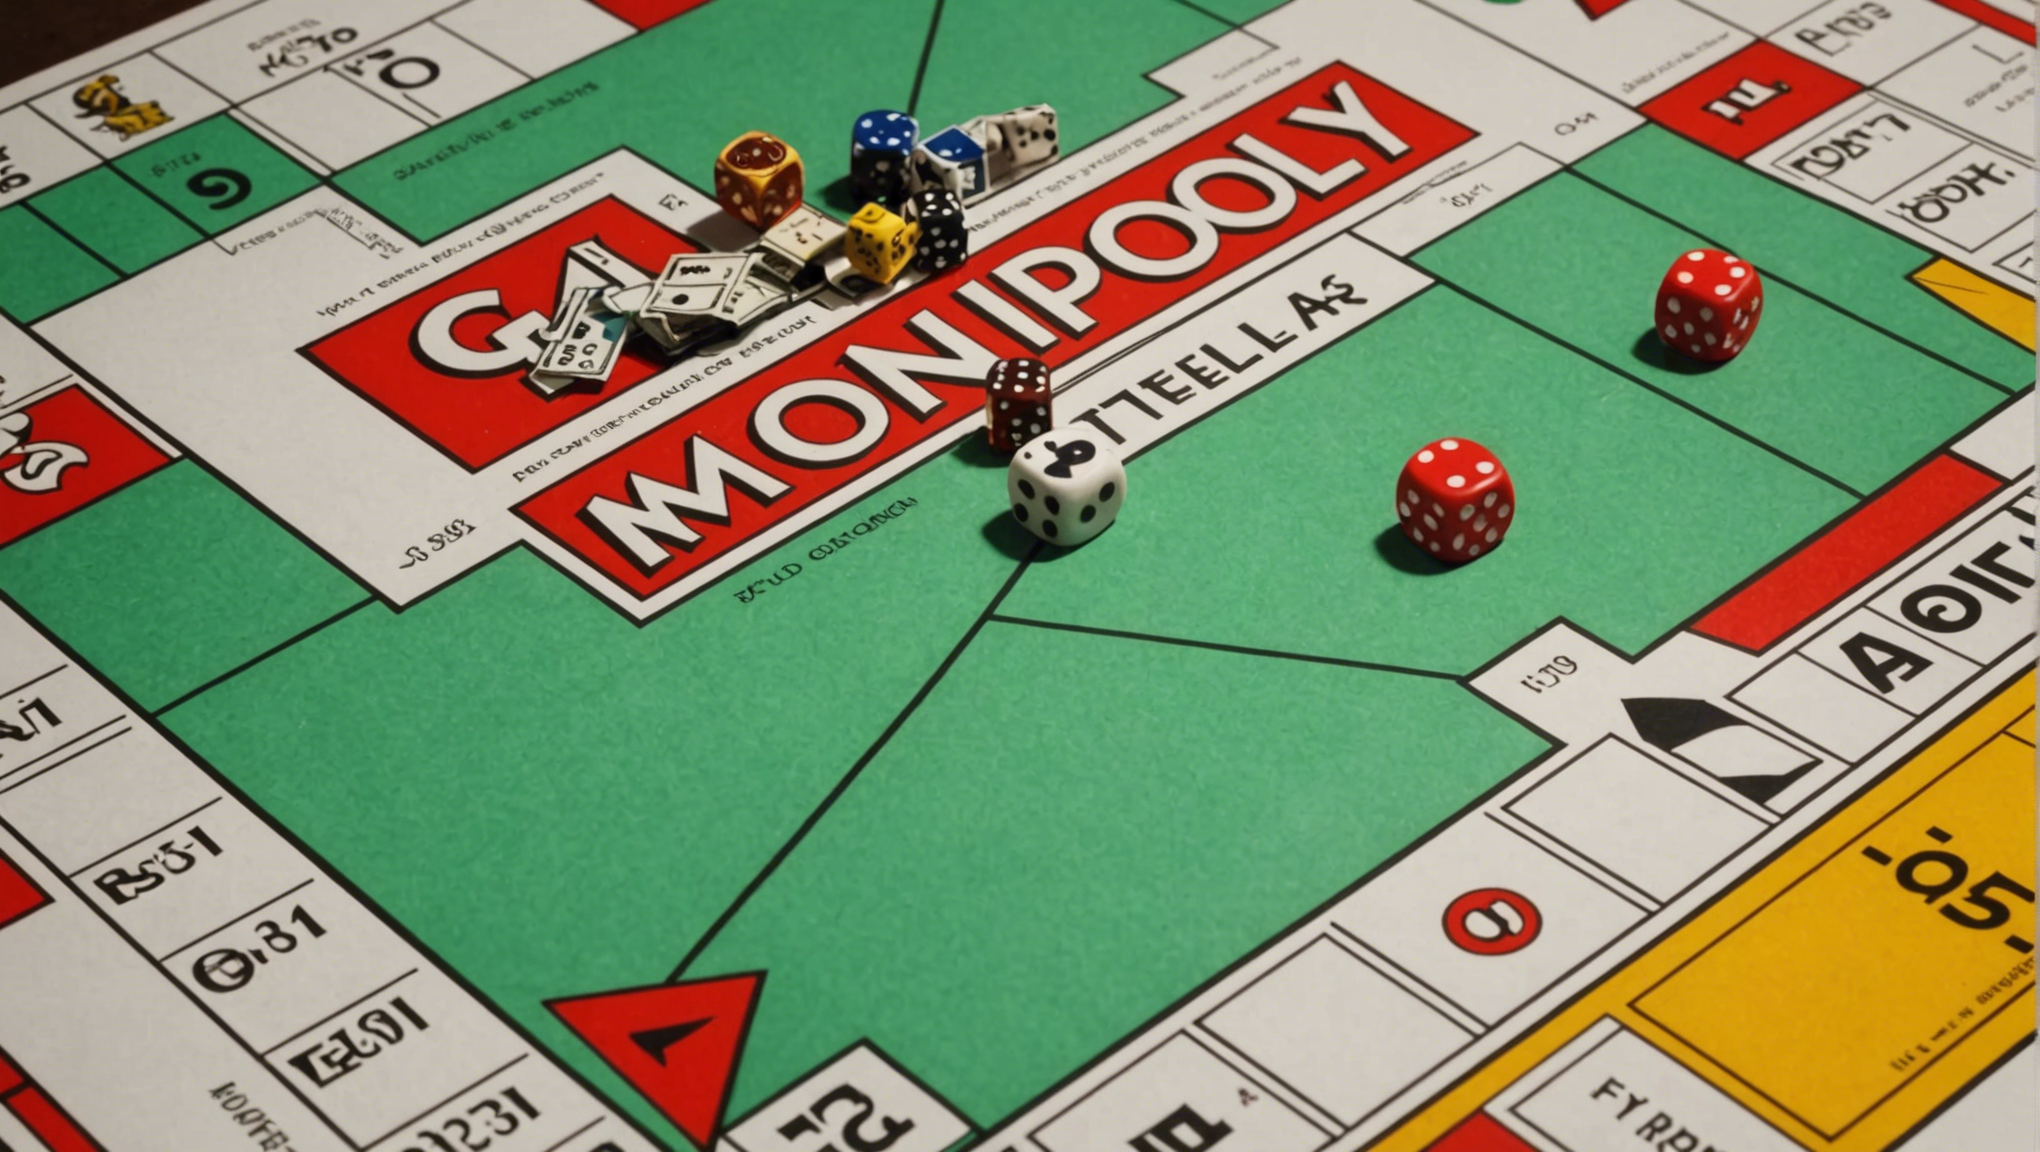 découvrez les meilleures stratégies pour remporter la victoire au monopoly et maximiser vos gains lors de ce célèbre jeu de société.